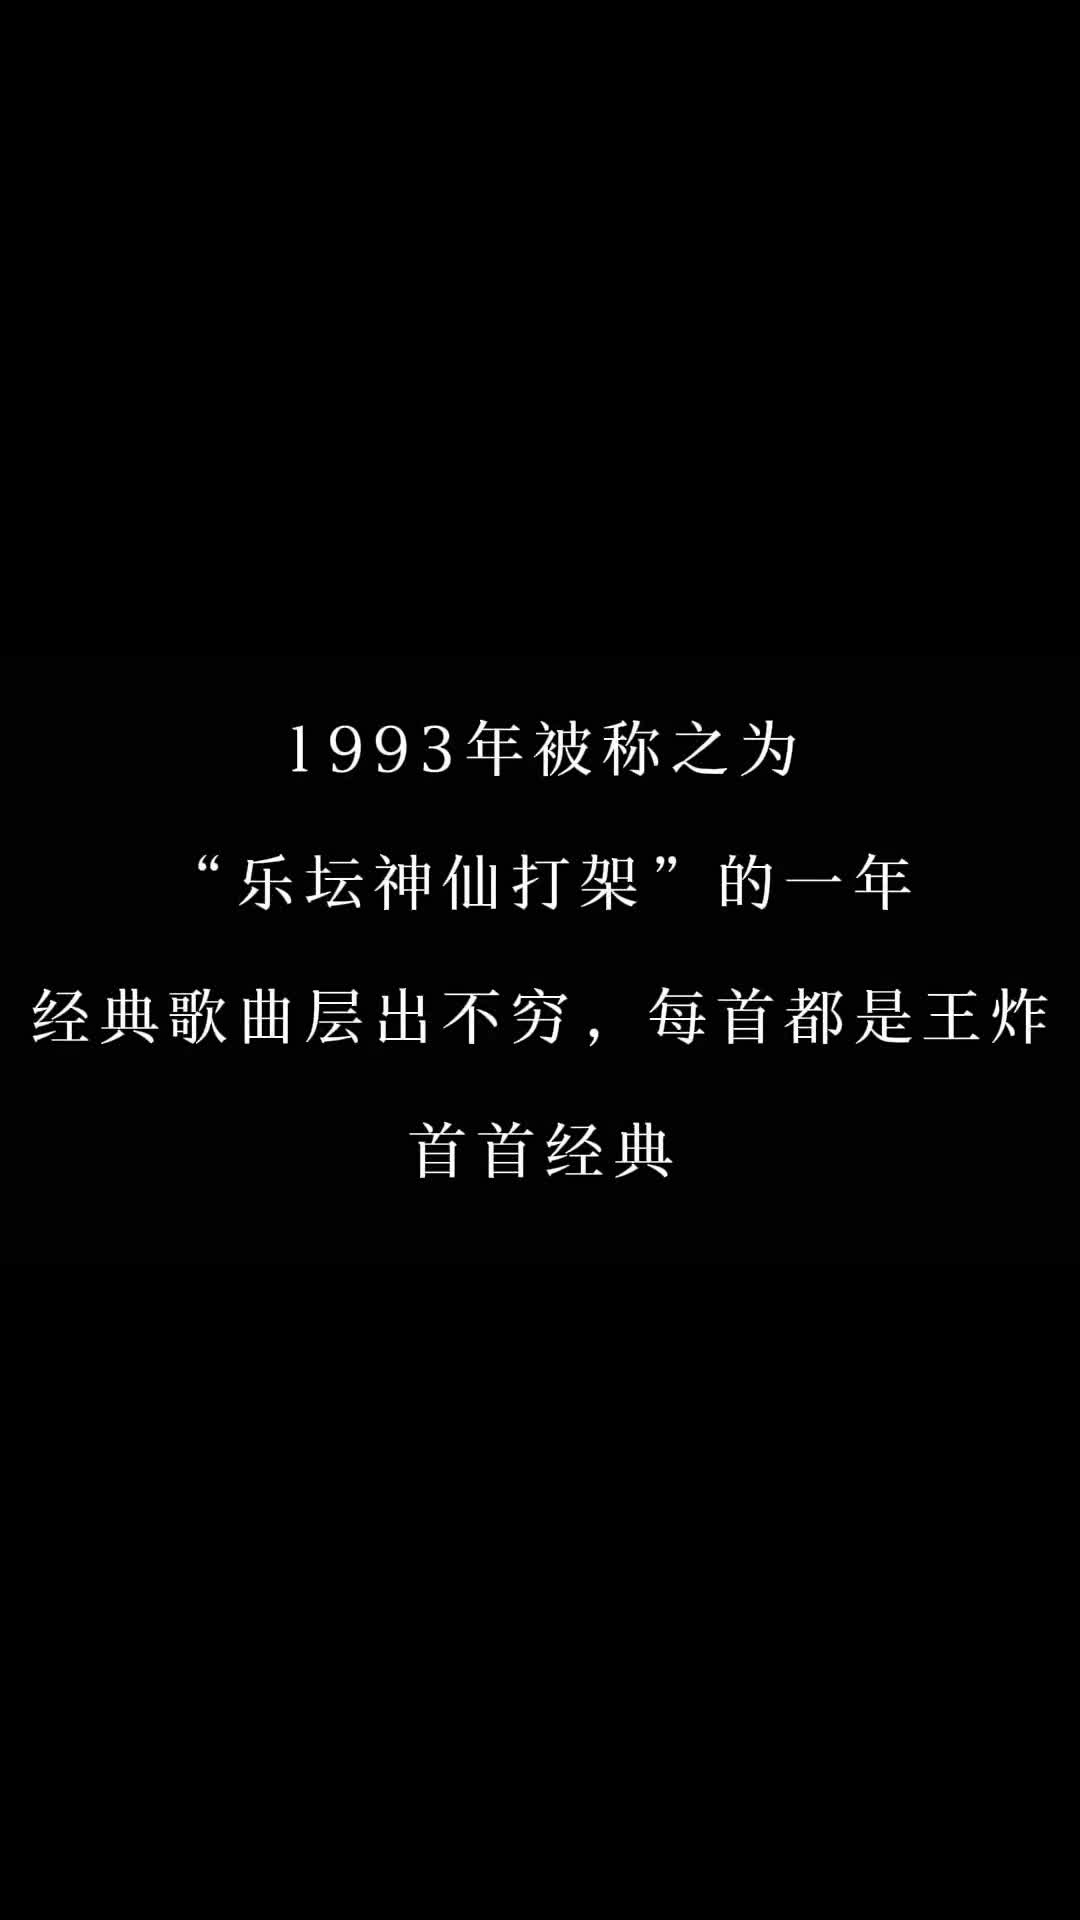 93年发行的经典金曲，你会唱几首 #周慧敏 #刘德华 #怀旧经典 #经典老歌 #热门音乐